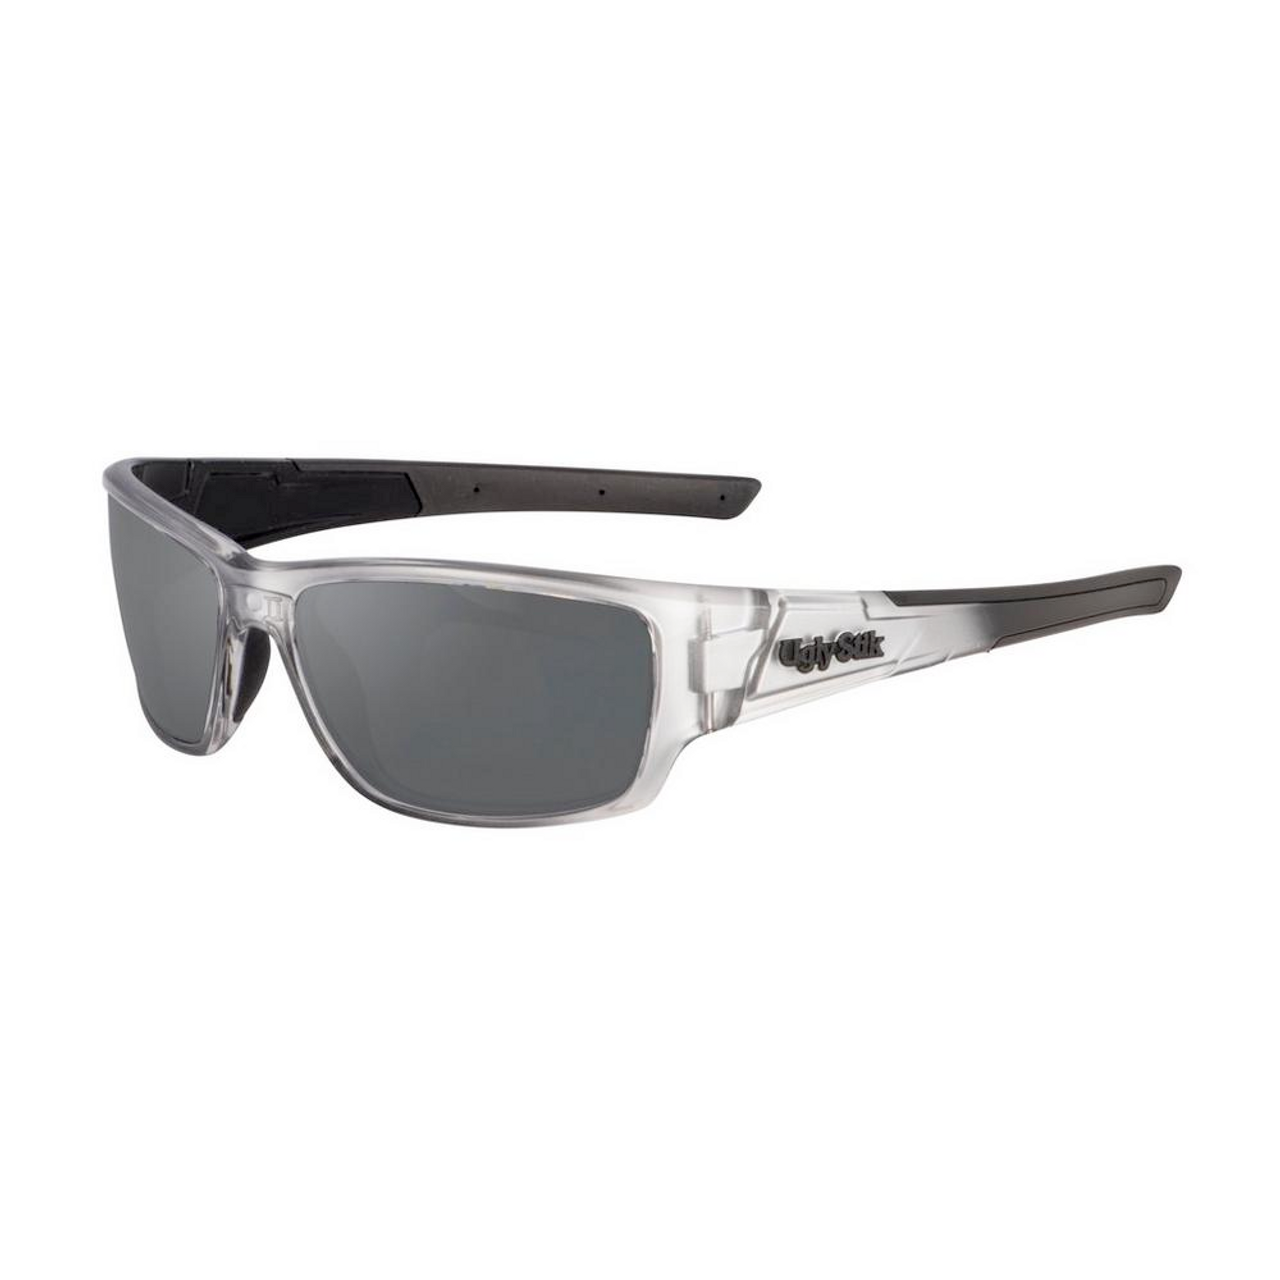 Shakespeare USK011 Sunglasses, Silver Frame/ Grey Lens, M/L